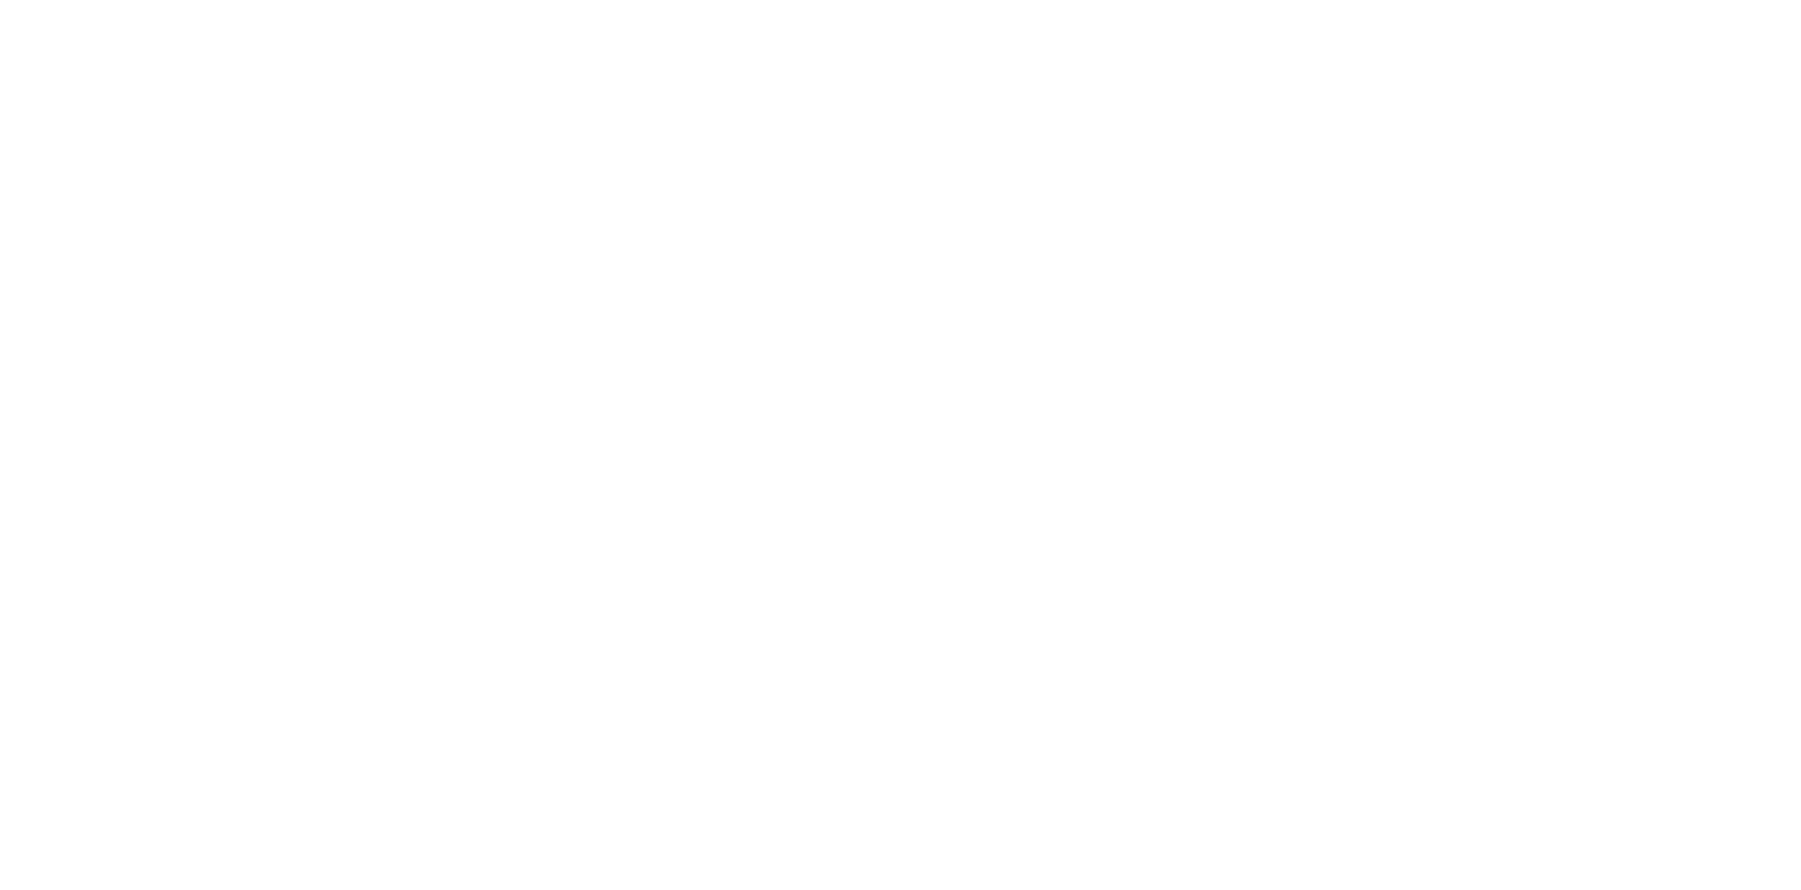 ERA real estate logo